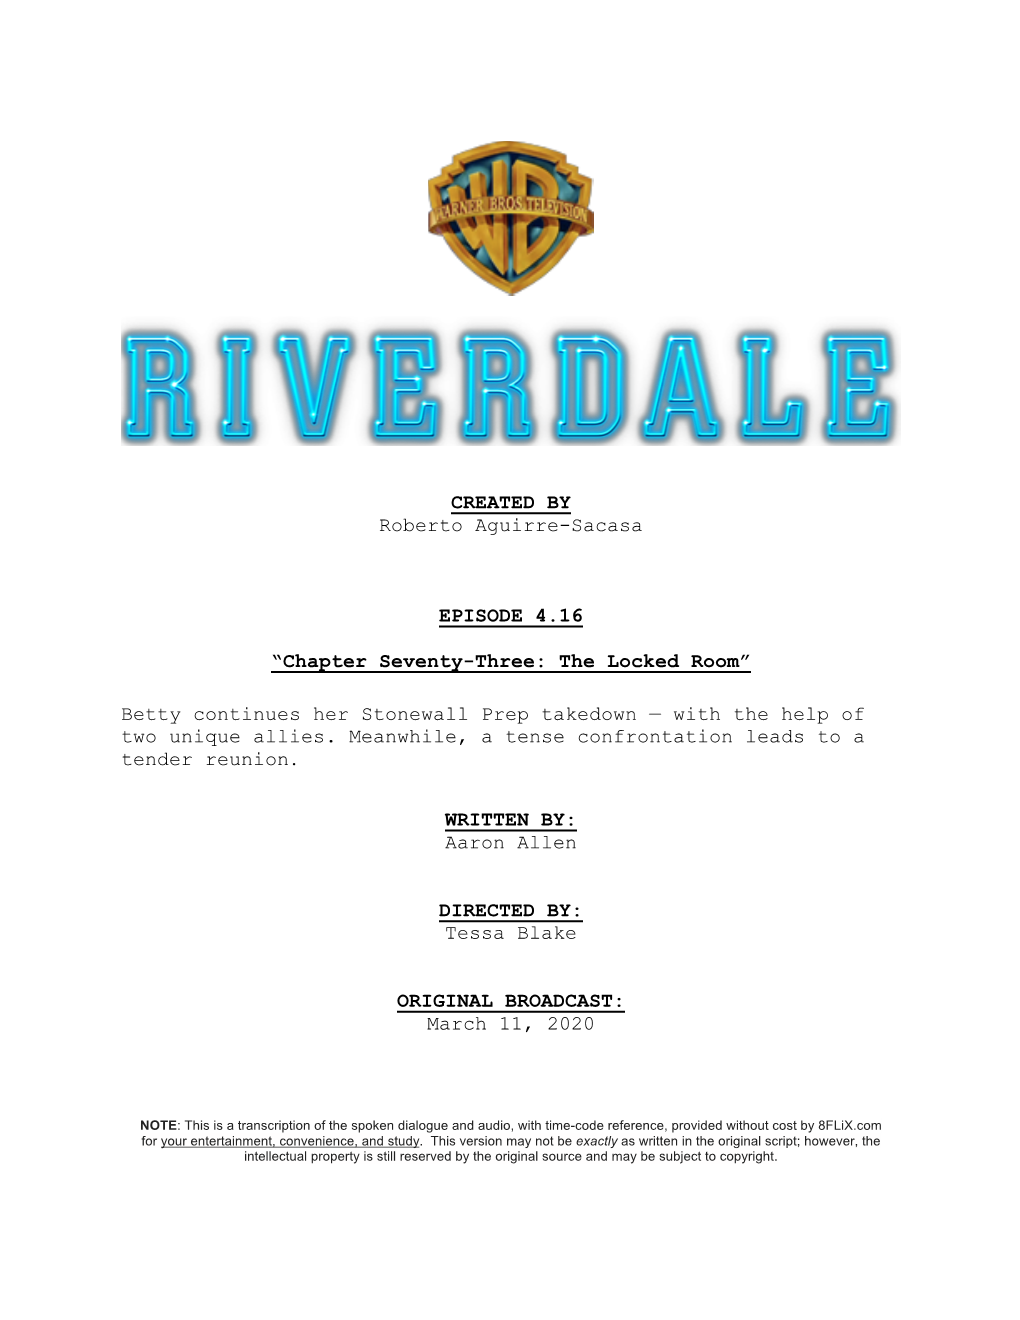 Riverdale | Dialogue Transcript | S4:E16